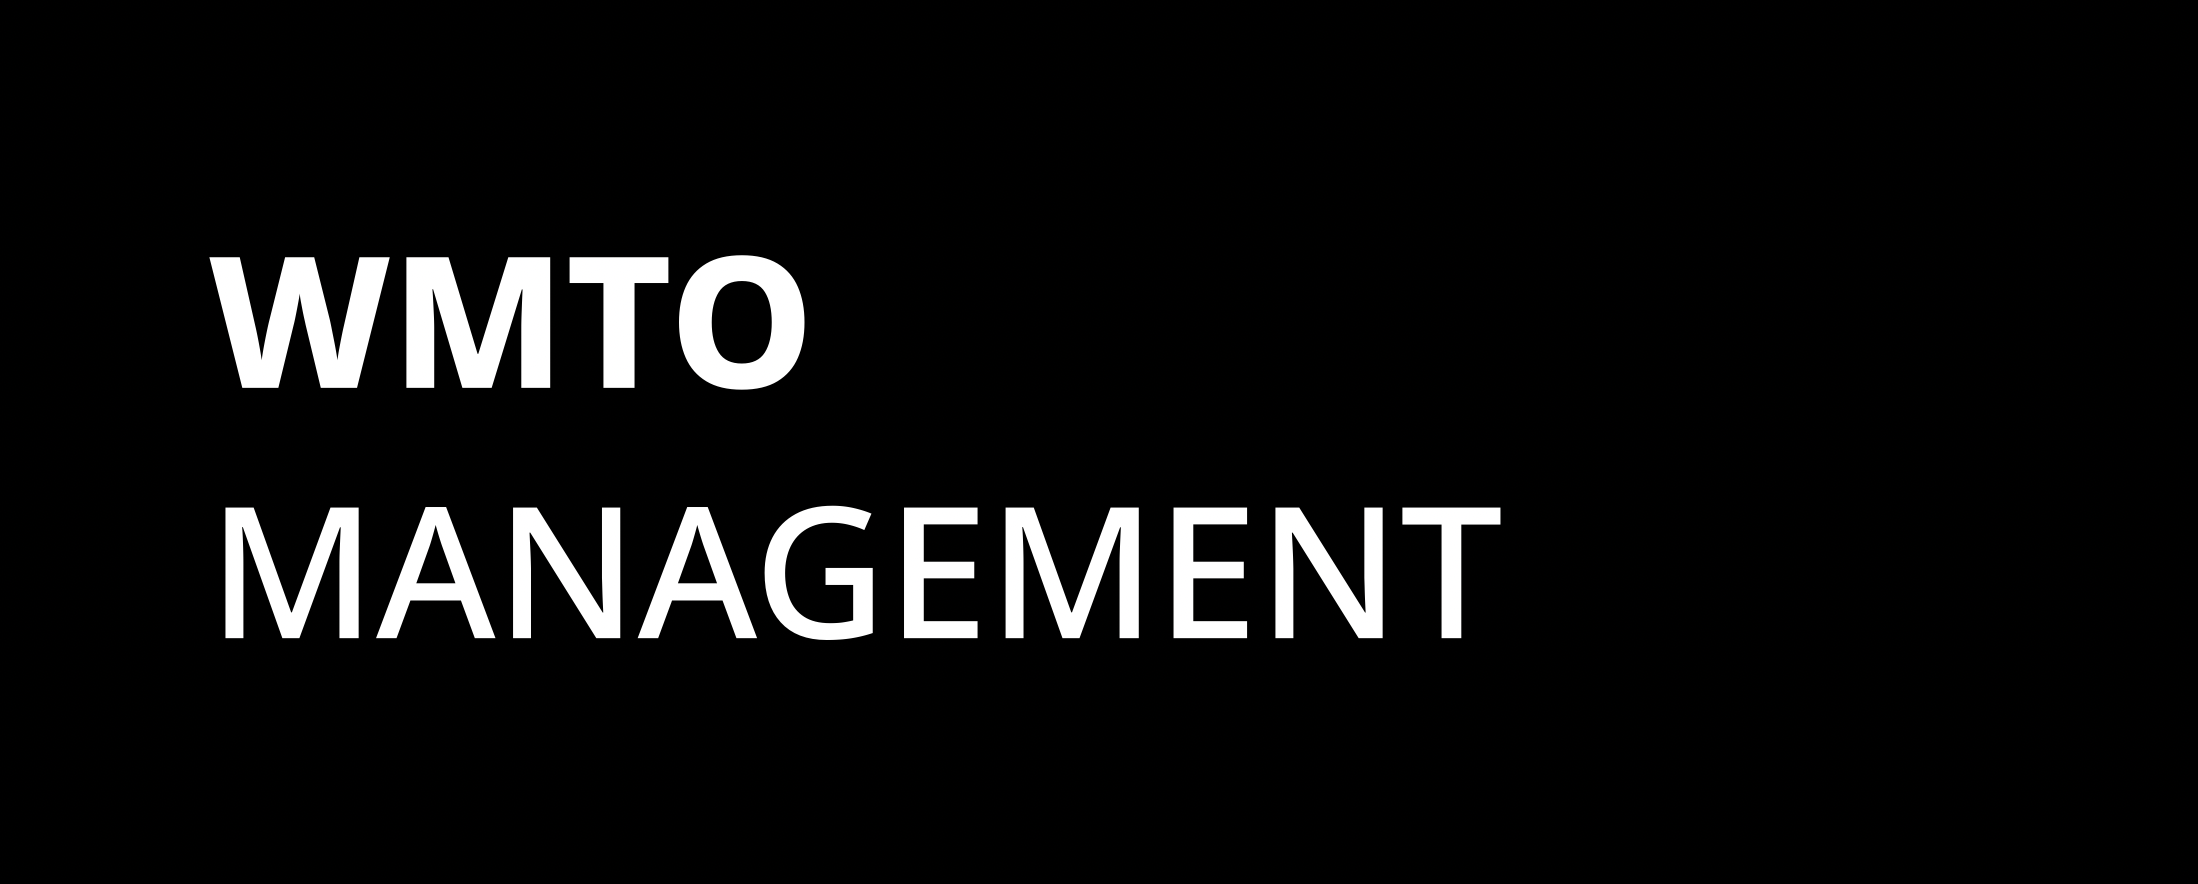 WMTO Management